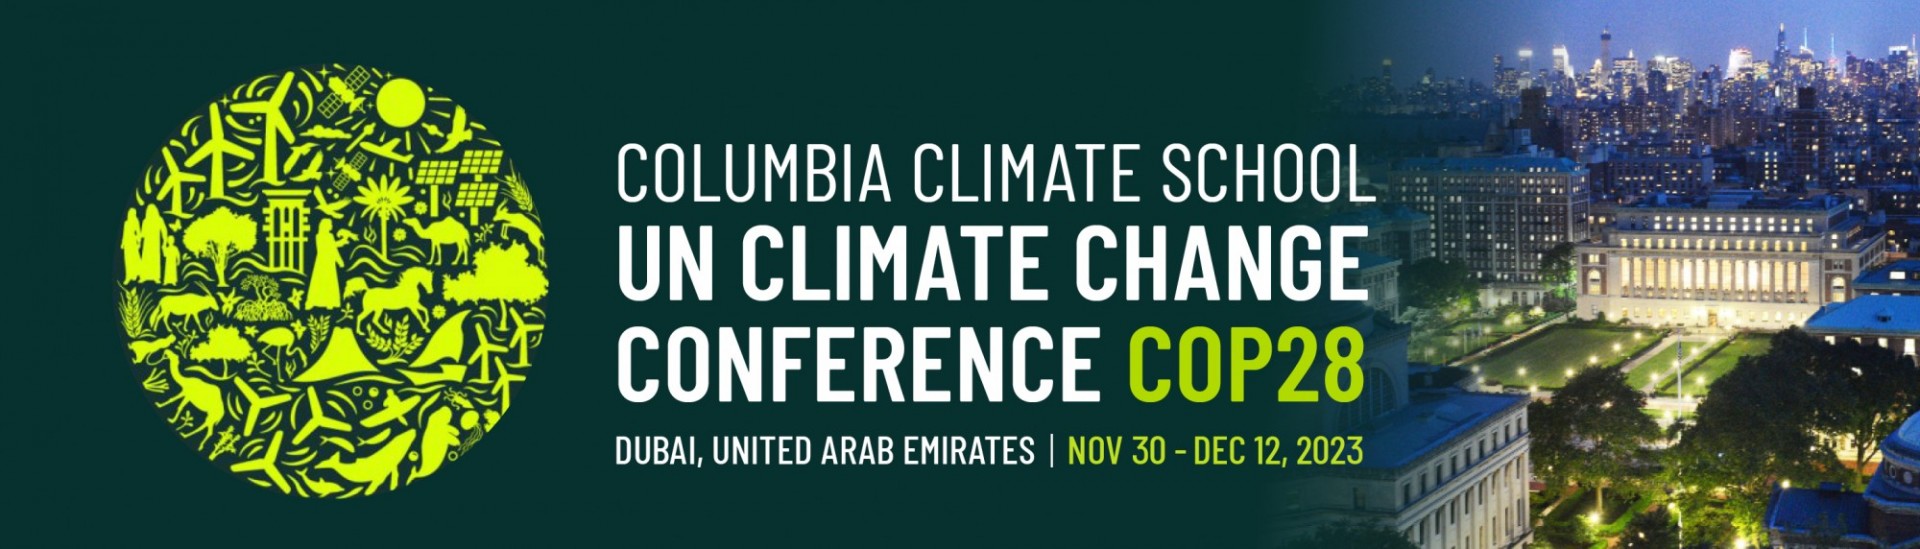 UN Climate Change Conference - COP28